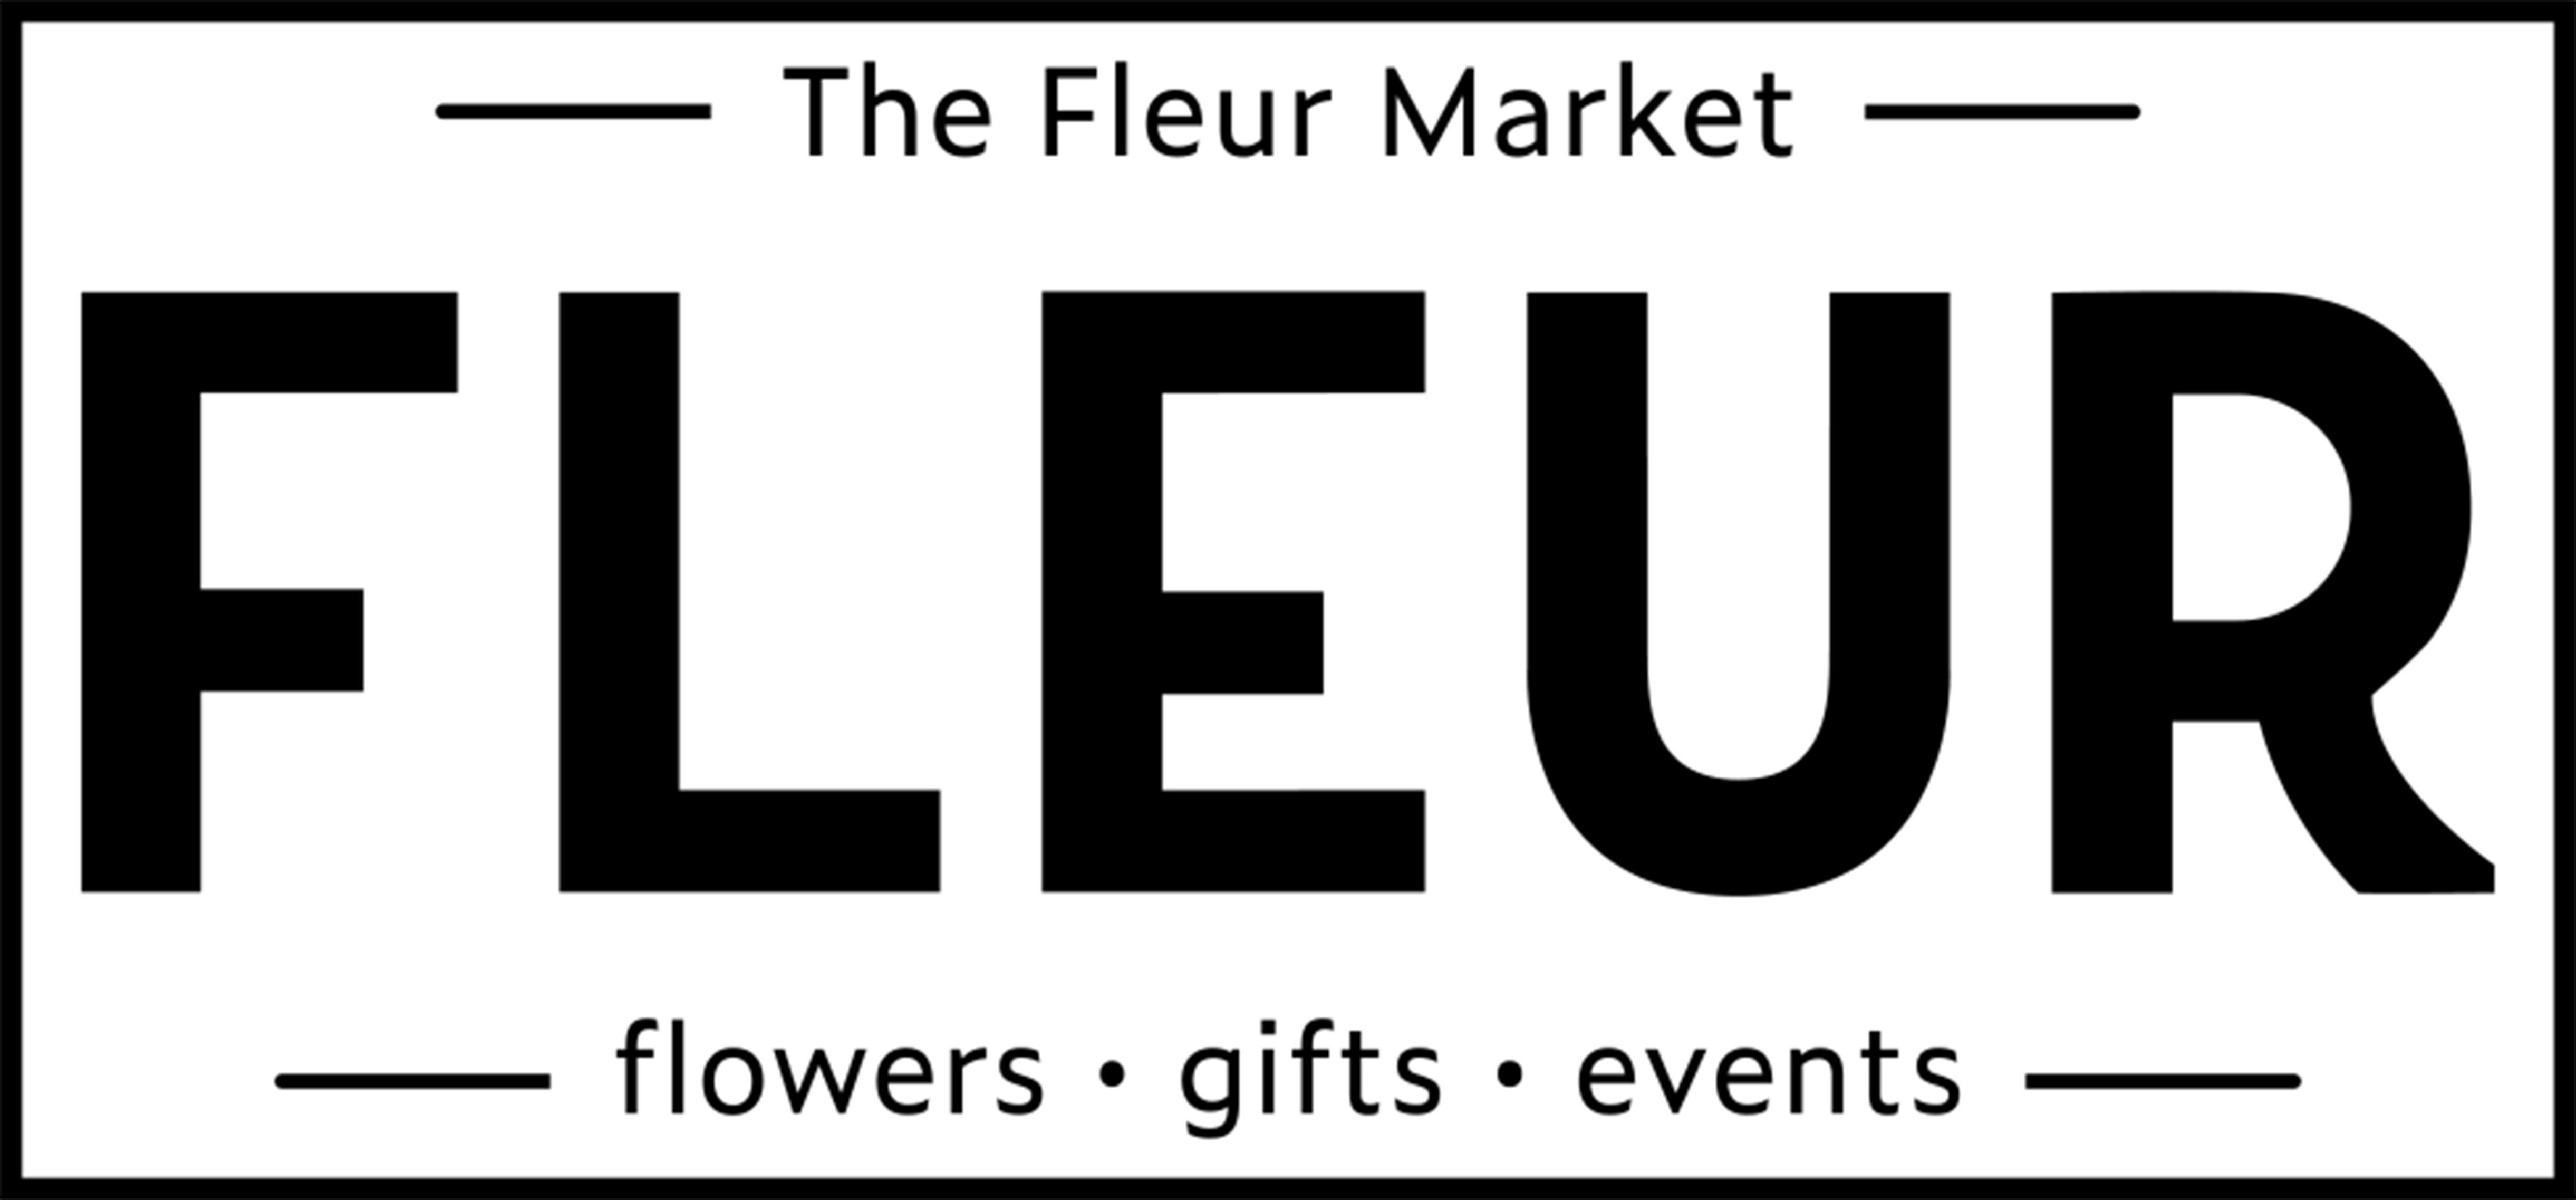 The Fleur Market